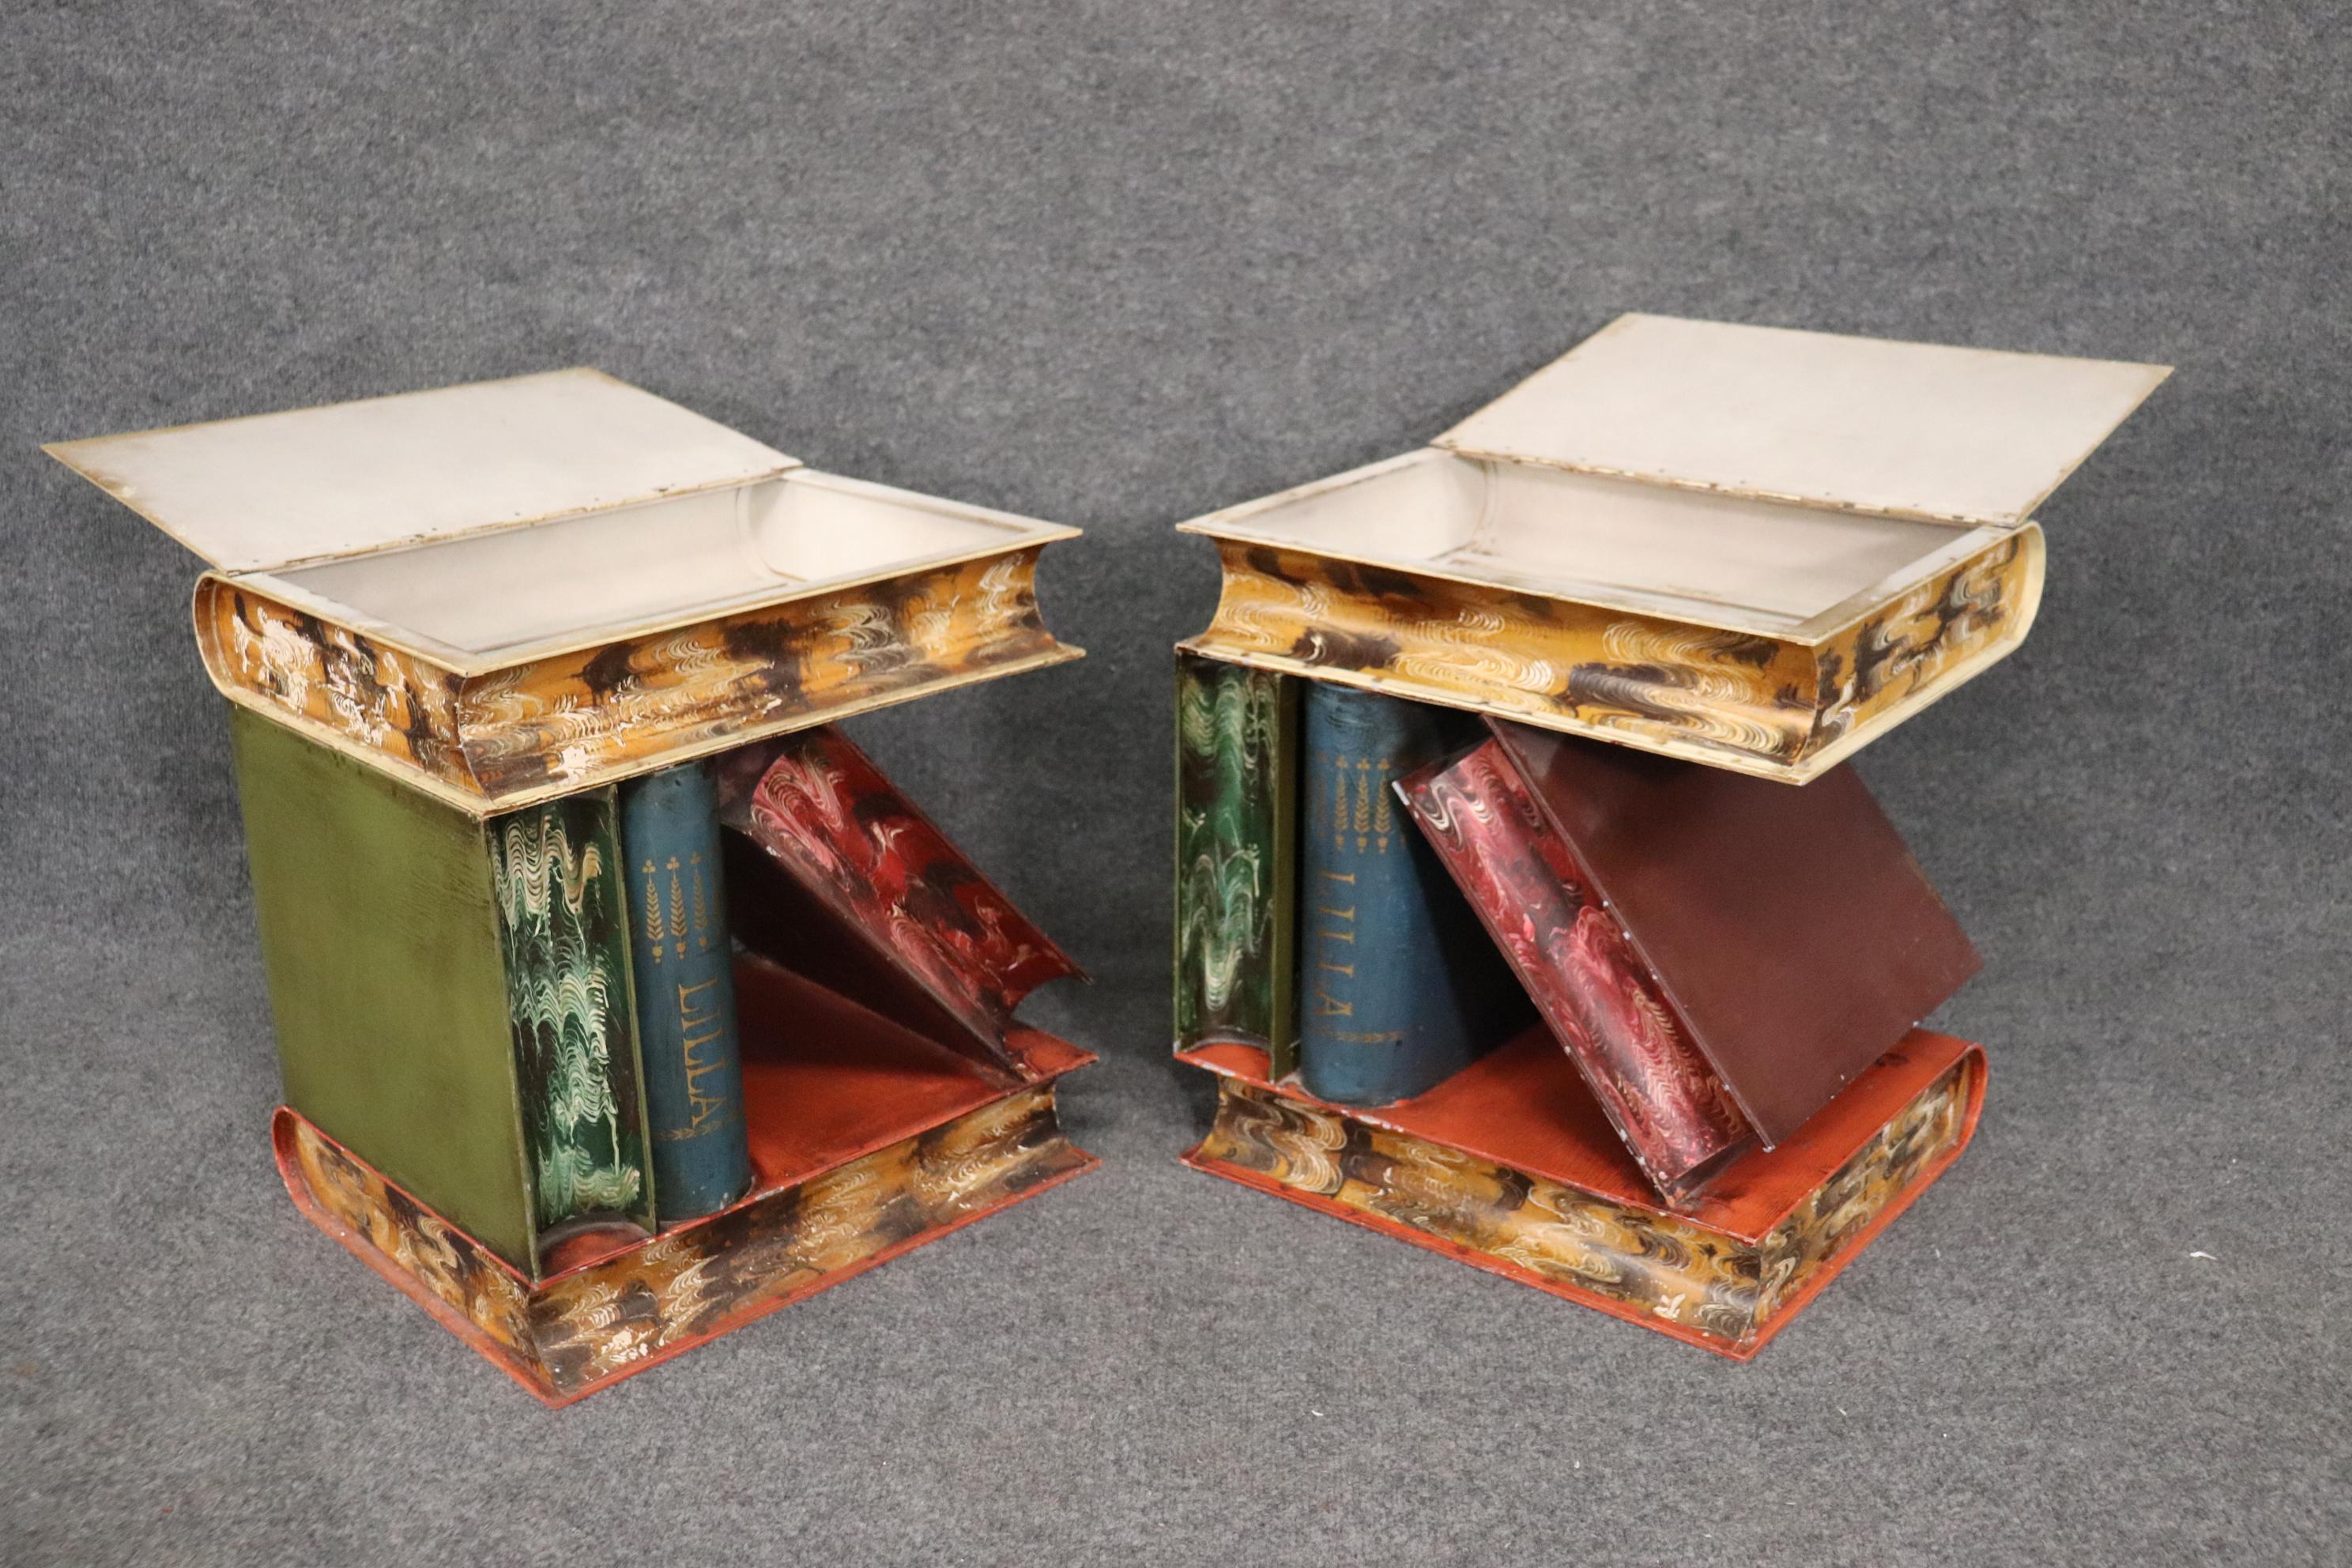 Il s'agit d'une paire spéciale de tables d'appoint uniques décorées de peinture racontée dans le style des livres empilés. Les originaux ne sont pas faciles à trouver et sont souvent reproduits par des entreprises comme Maitland Smith. Cette paire